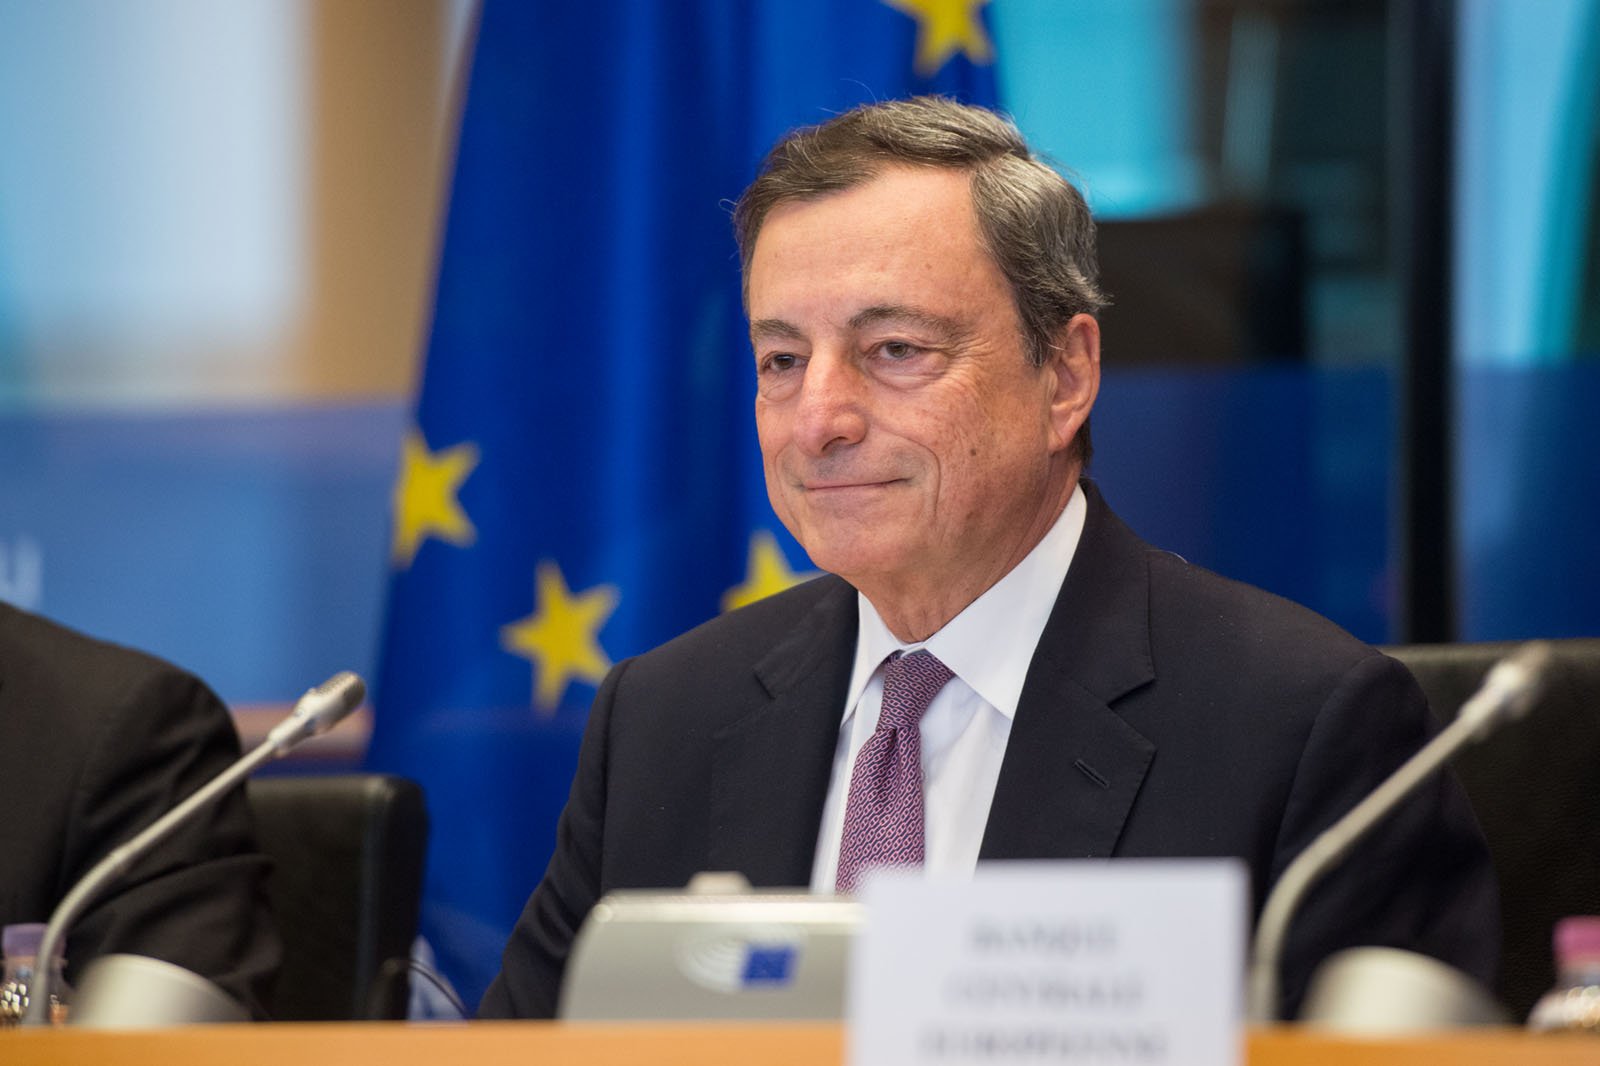  Draghi este primul demnitar care ridică glasul împotriva comportament bădărănesc a lui Erdogan